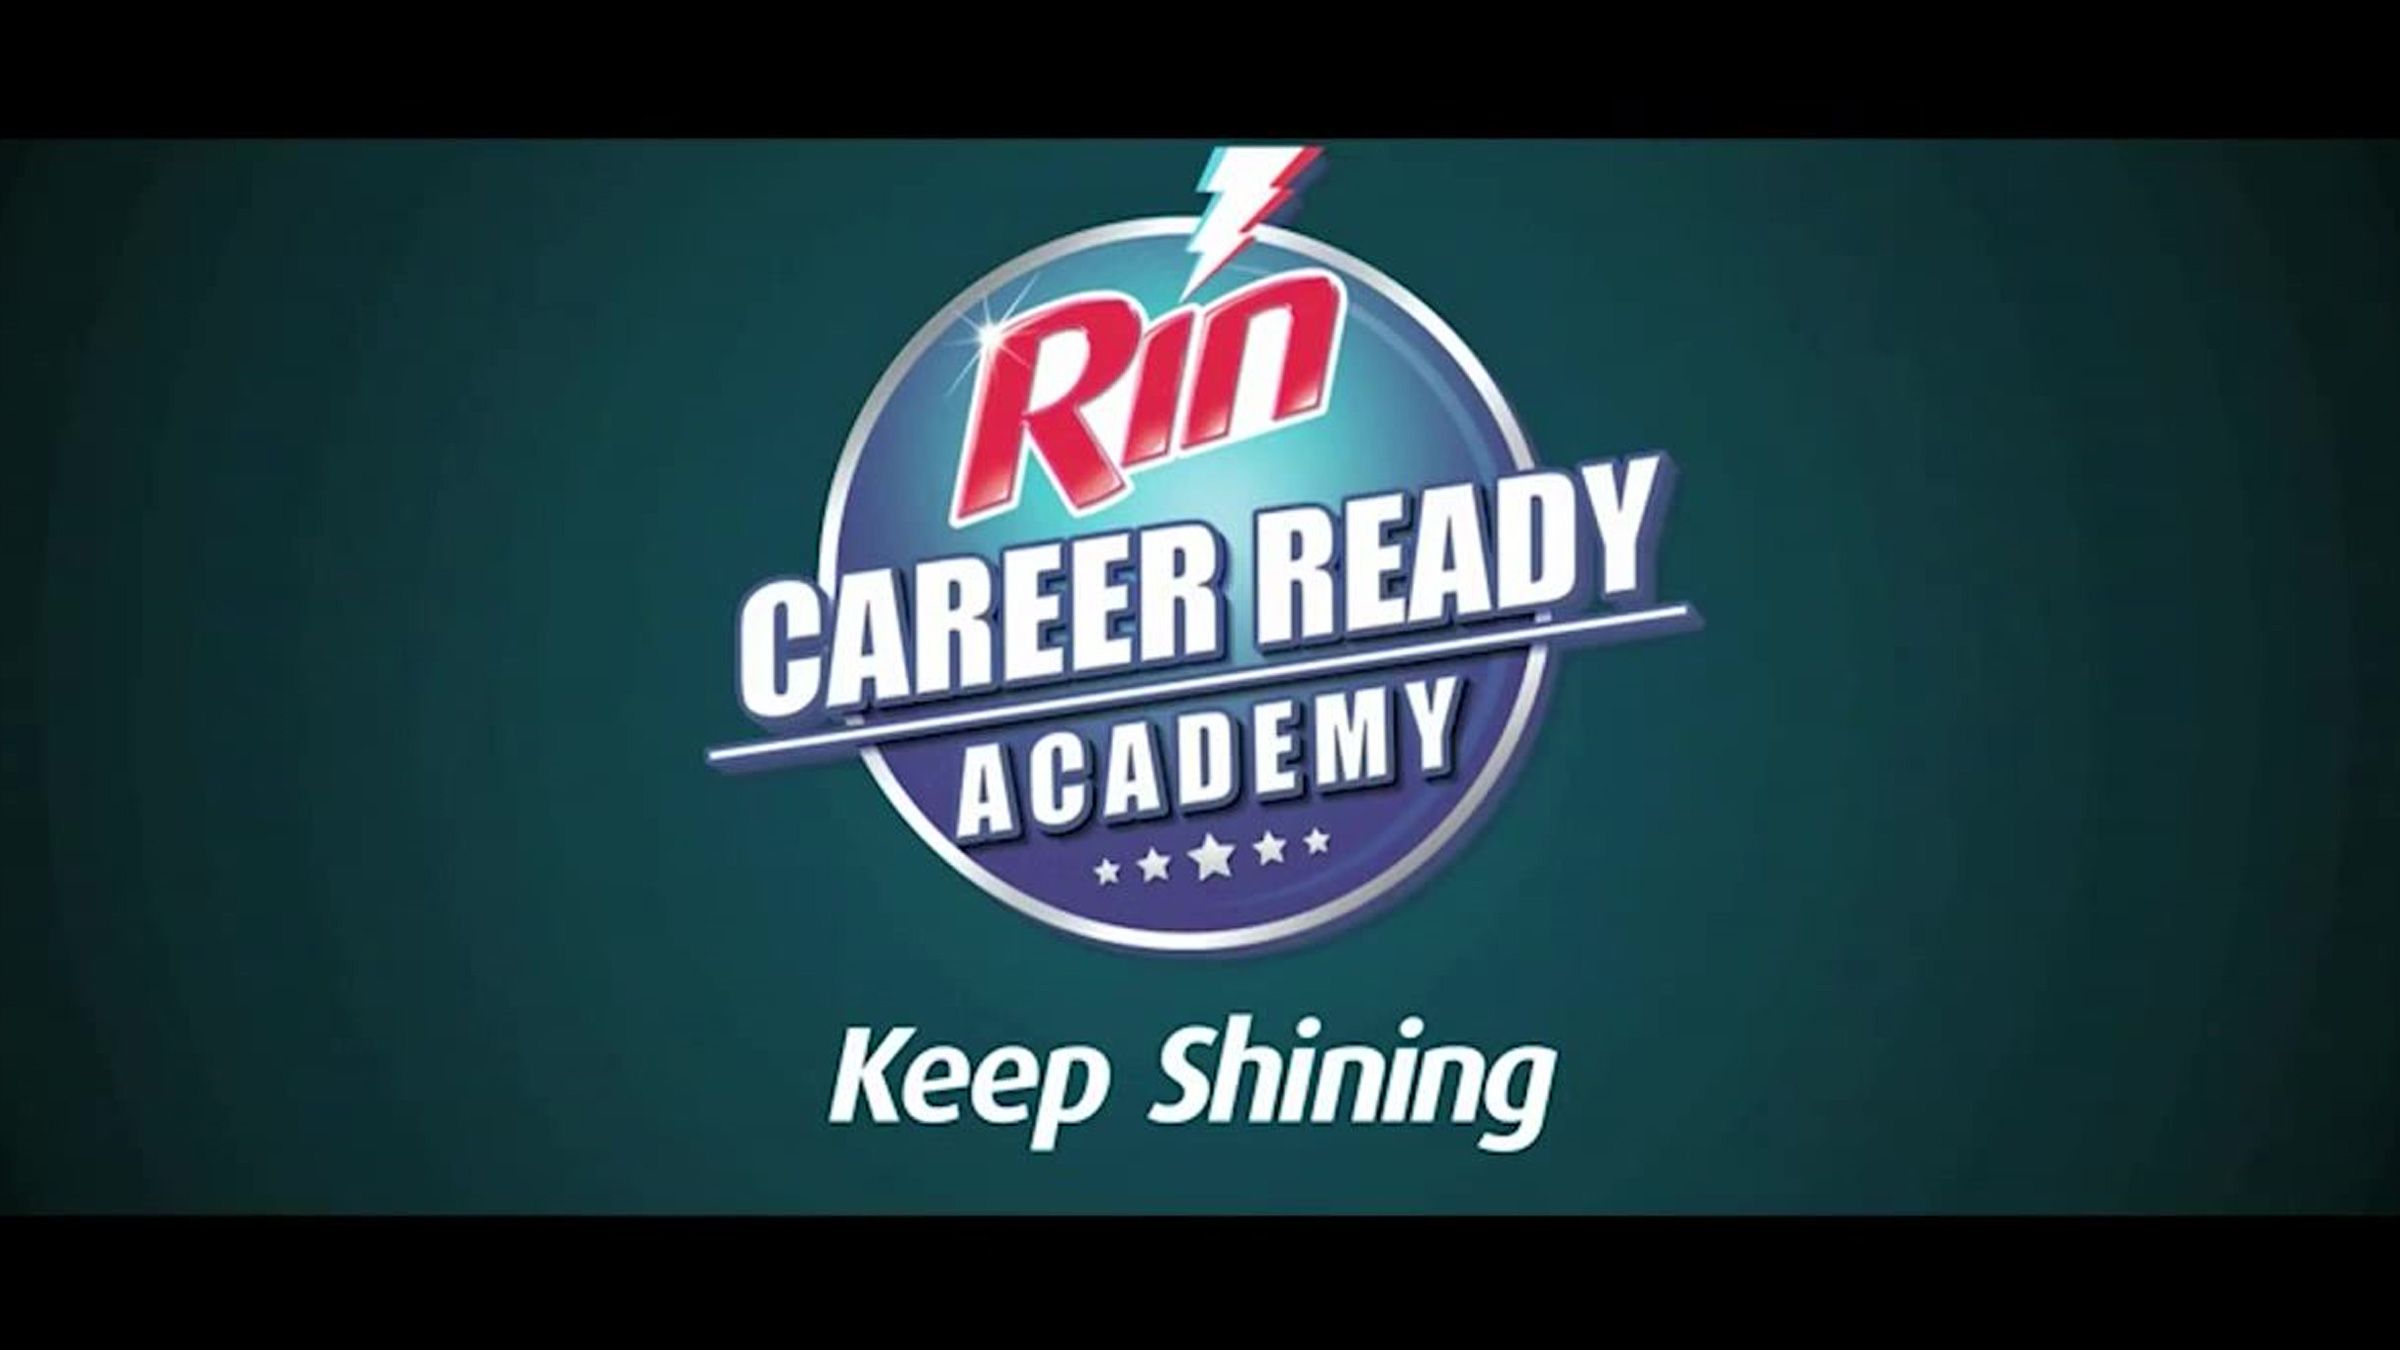 Rin keep shining logo